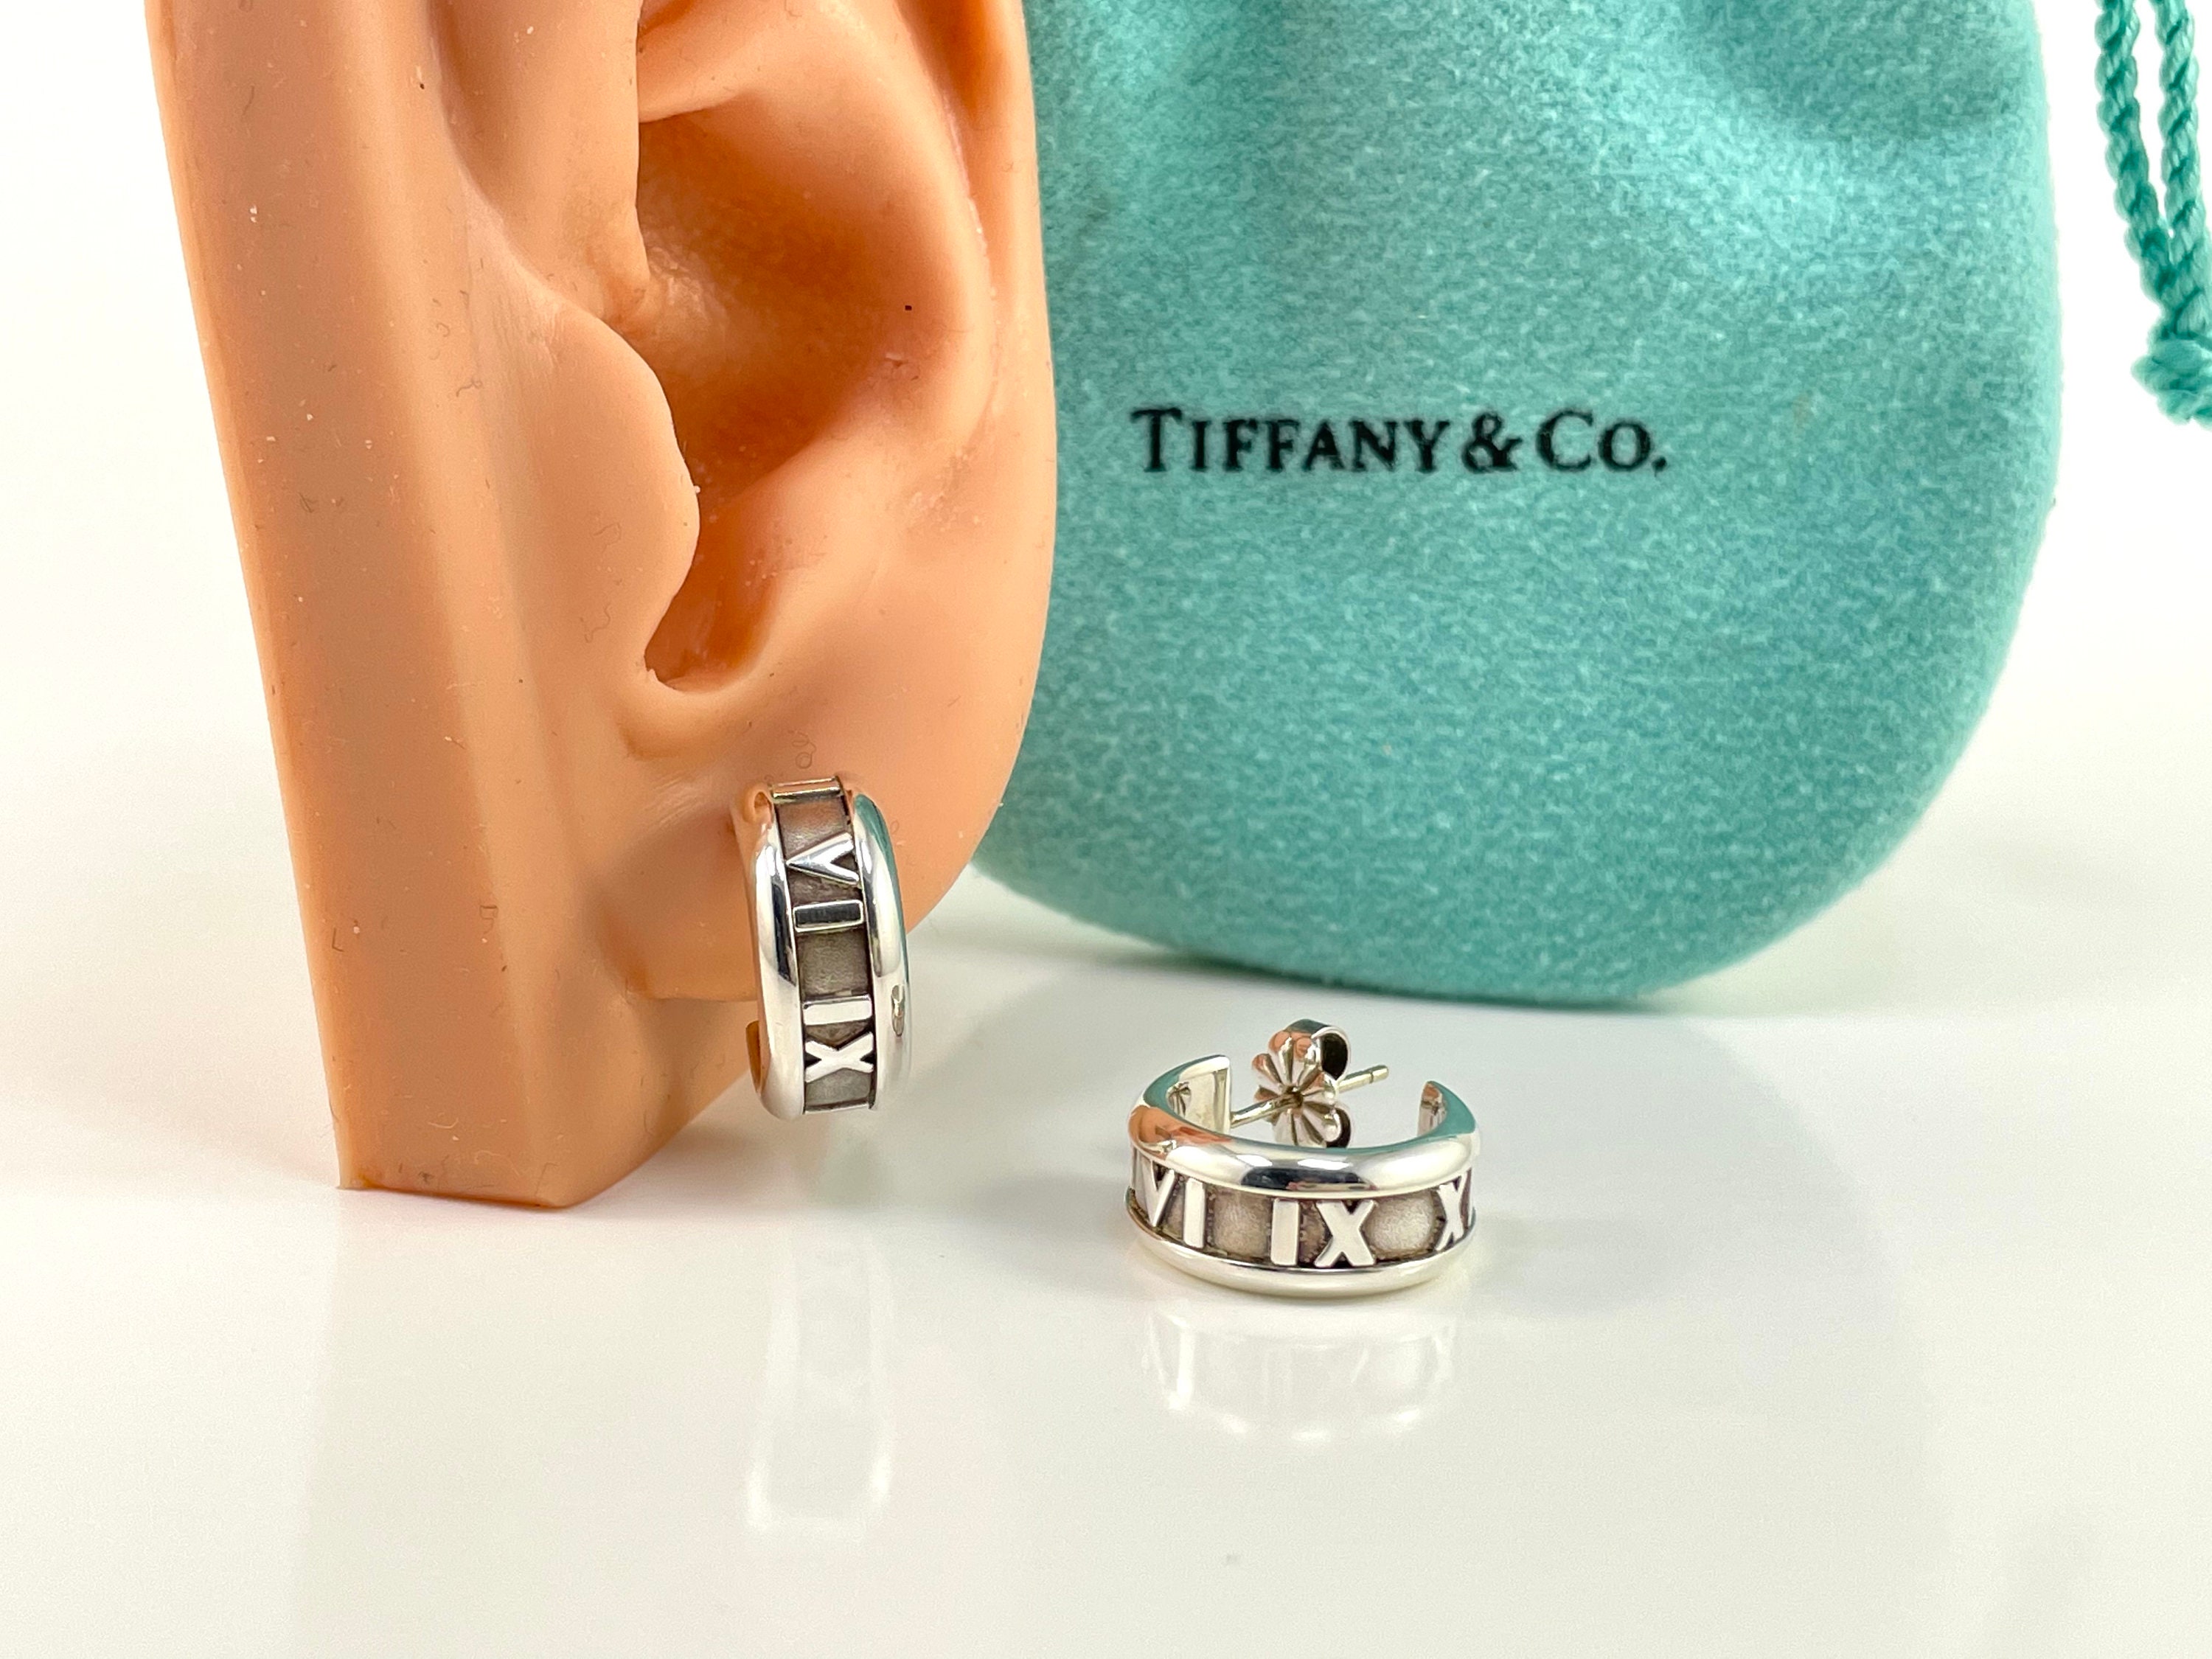 TIFFANY & CO. ATLAS ROMAN NUMERALS RING IN SOLID 18 KT WHITE GOLD –  Treasure Fine Jewelry